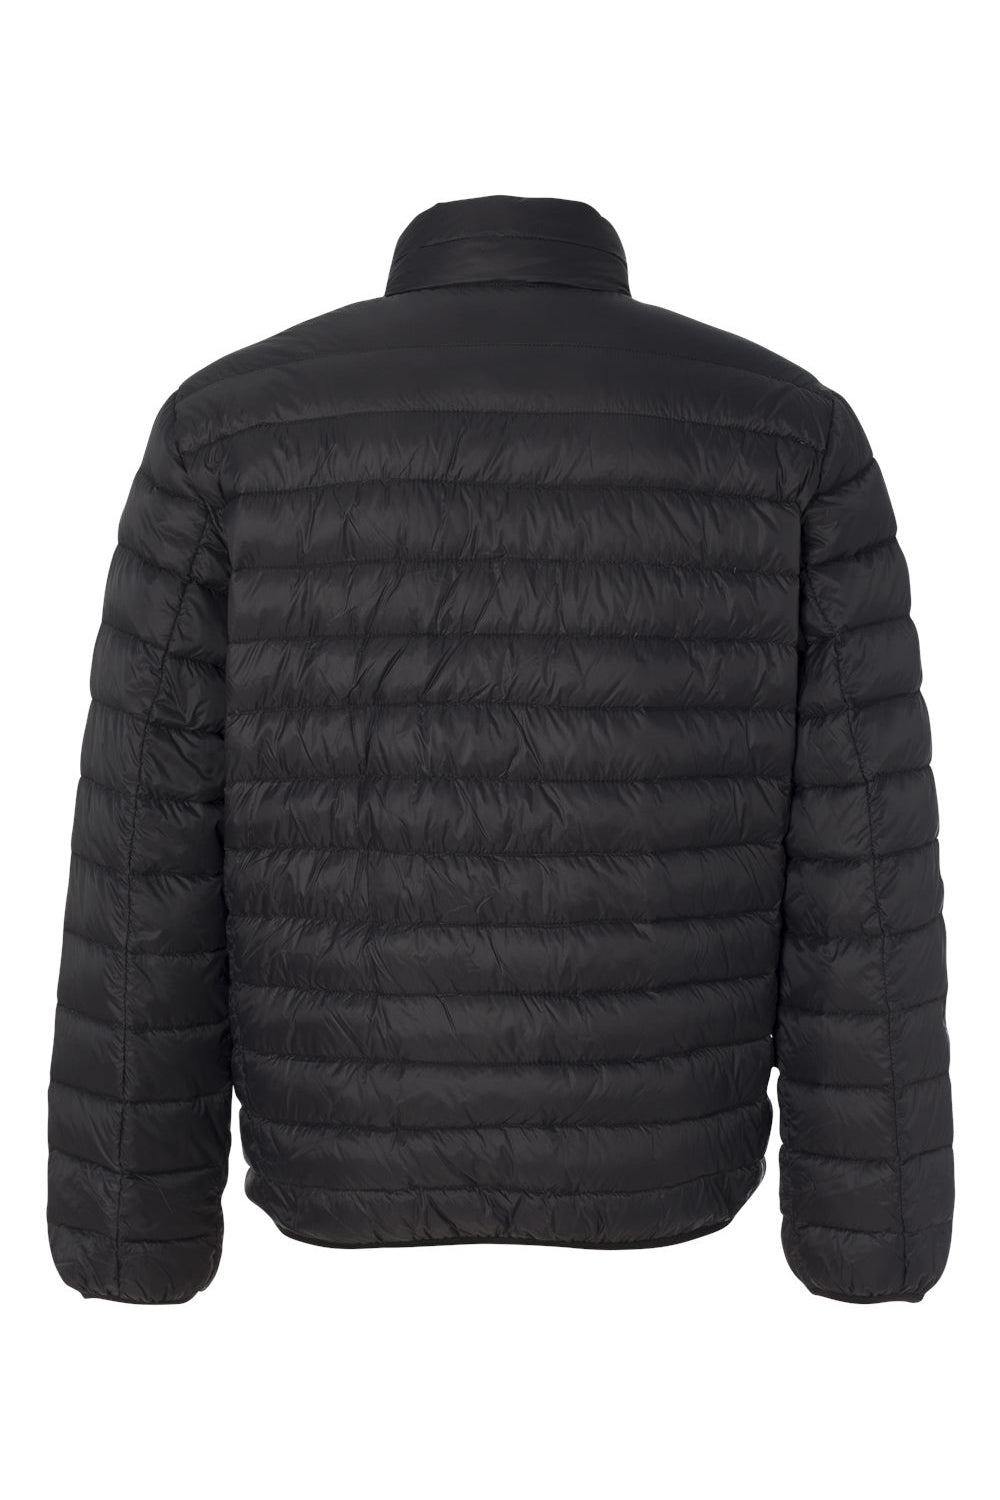 Weatherproof 15600 Mens 32 Degrees Packable Down Full Zip Jacket Black Flat Back